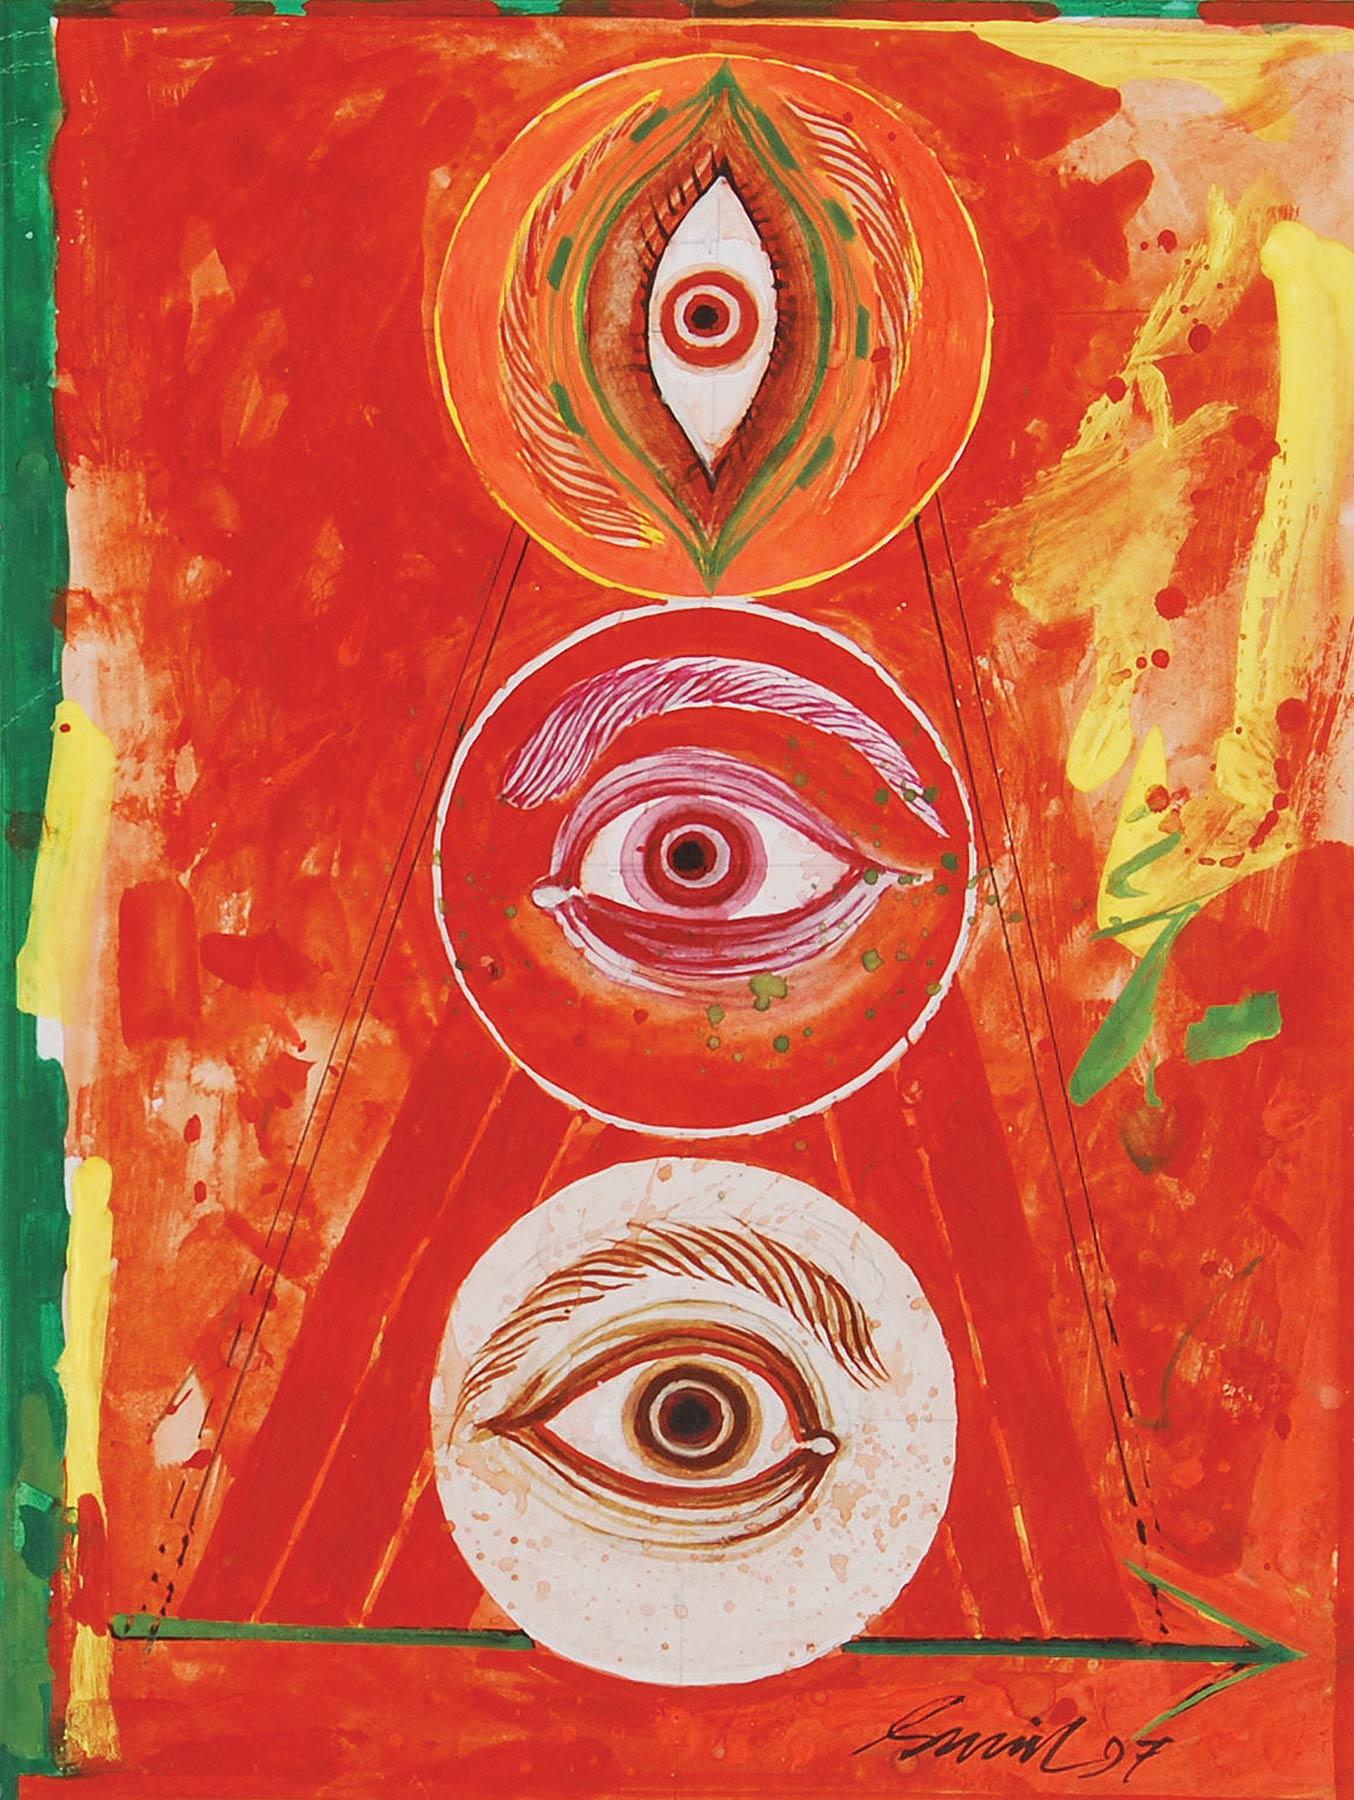 Durga 97, technique mixte sur panneau, rouge, jaune, vert par l'artiste indien « En stock » - Mixed Media Art de Sunil Das